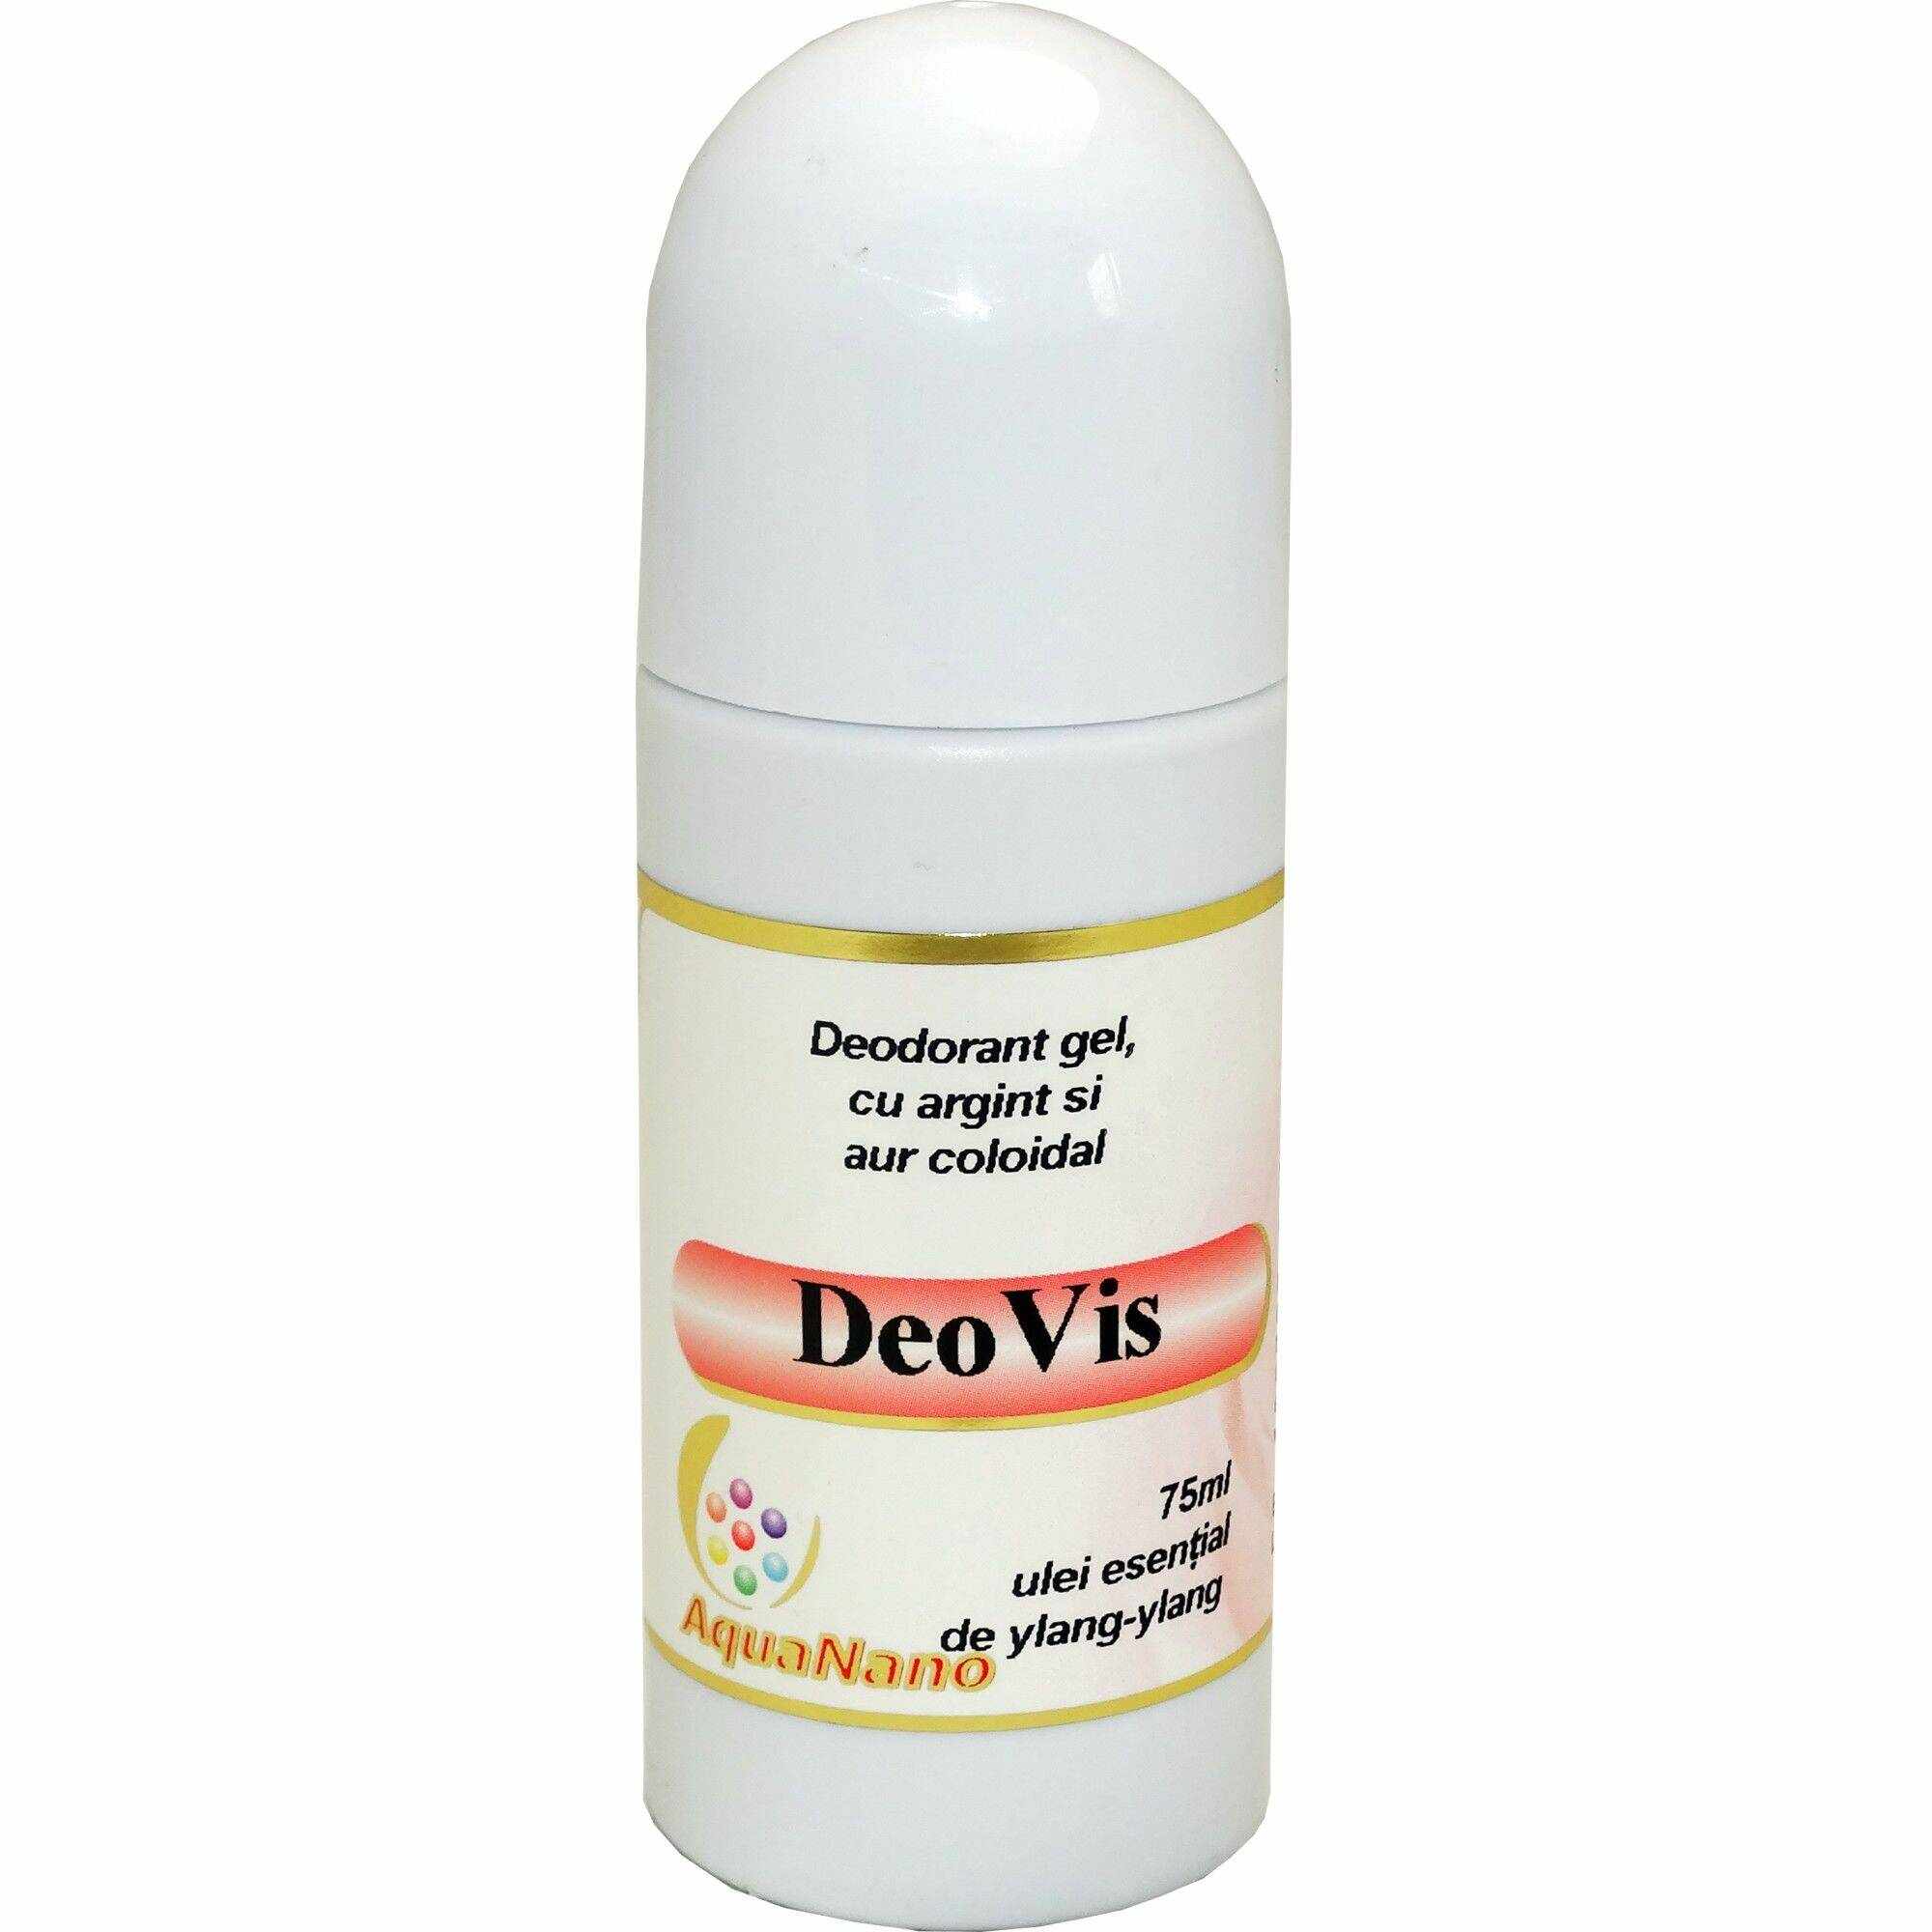 Deodorant gel roll-on bio DeoVis 75ml cu argint si aur coloidal AquaNano lamaie